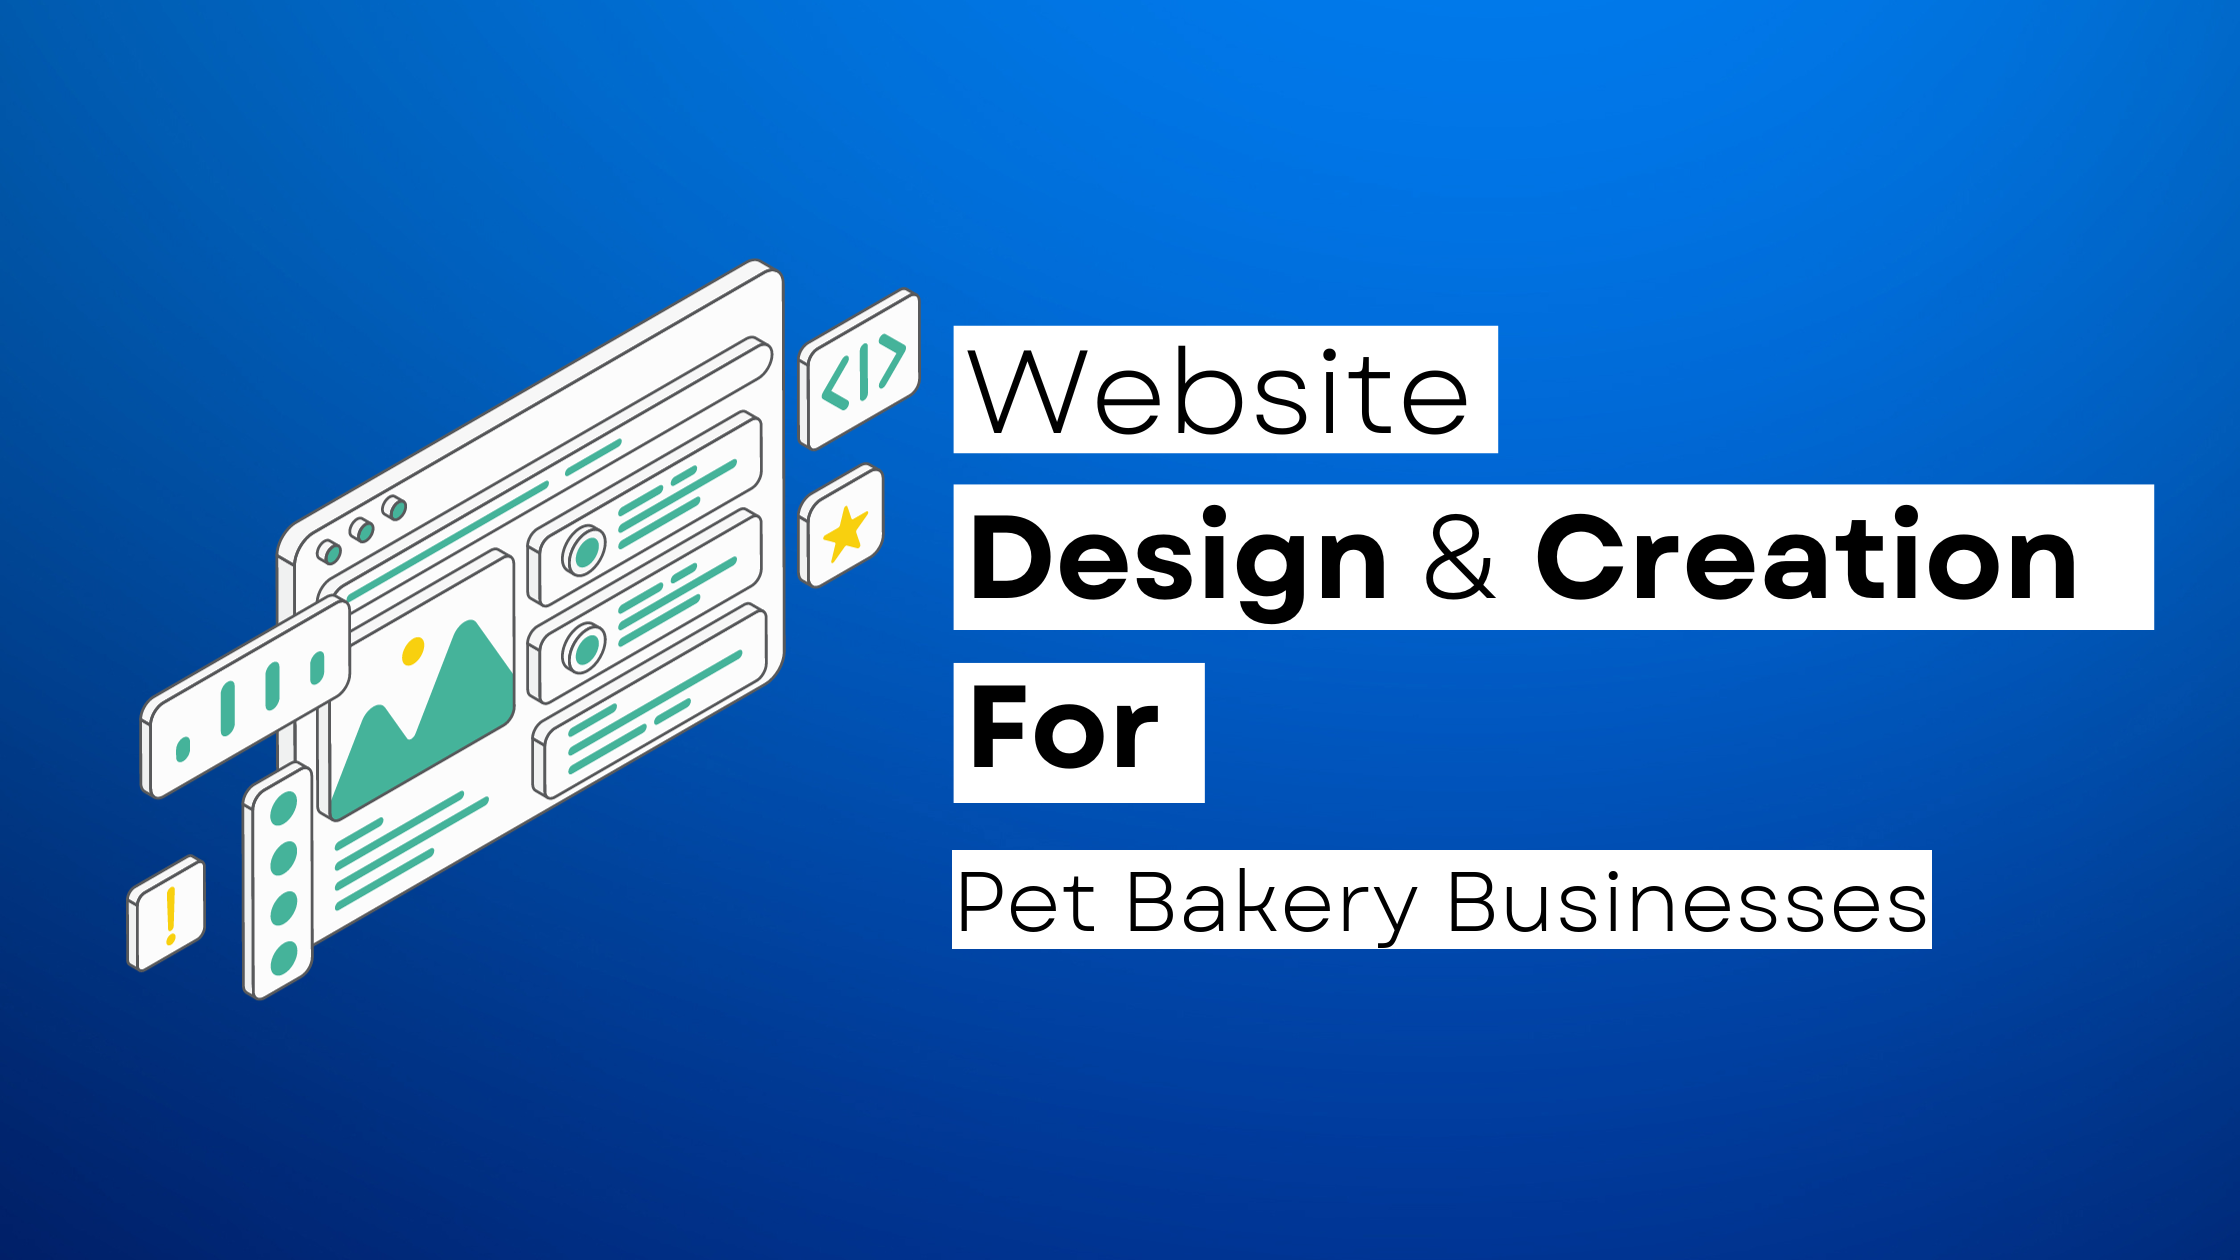 How to start a Pet Bakery website